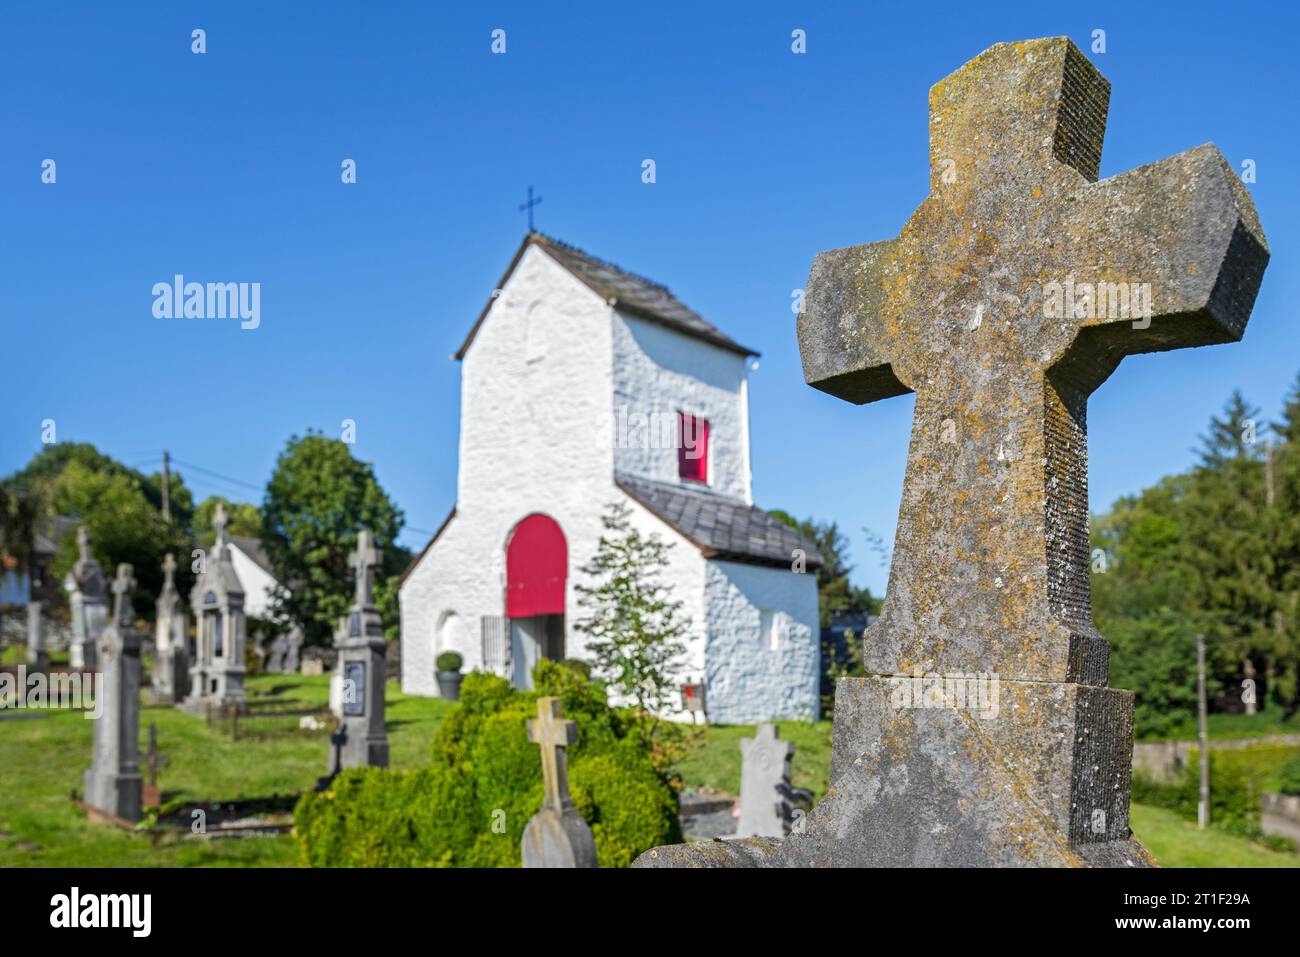 Chapelle Saint-Marguerite del siglo XII y cementerio en el pueblo Ollomont, Houffalize, provincia de Luxemburgo, Ardenas belgas, Valonia, Bélgica Foto de stock